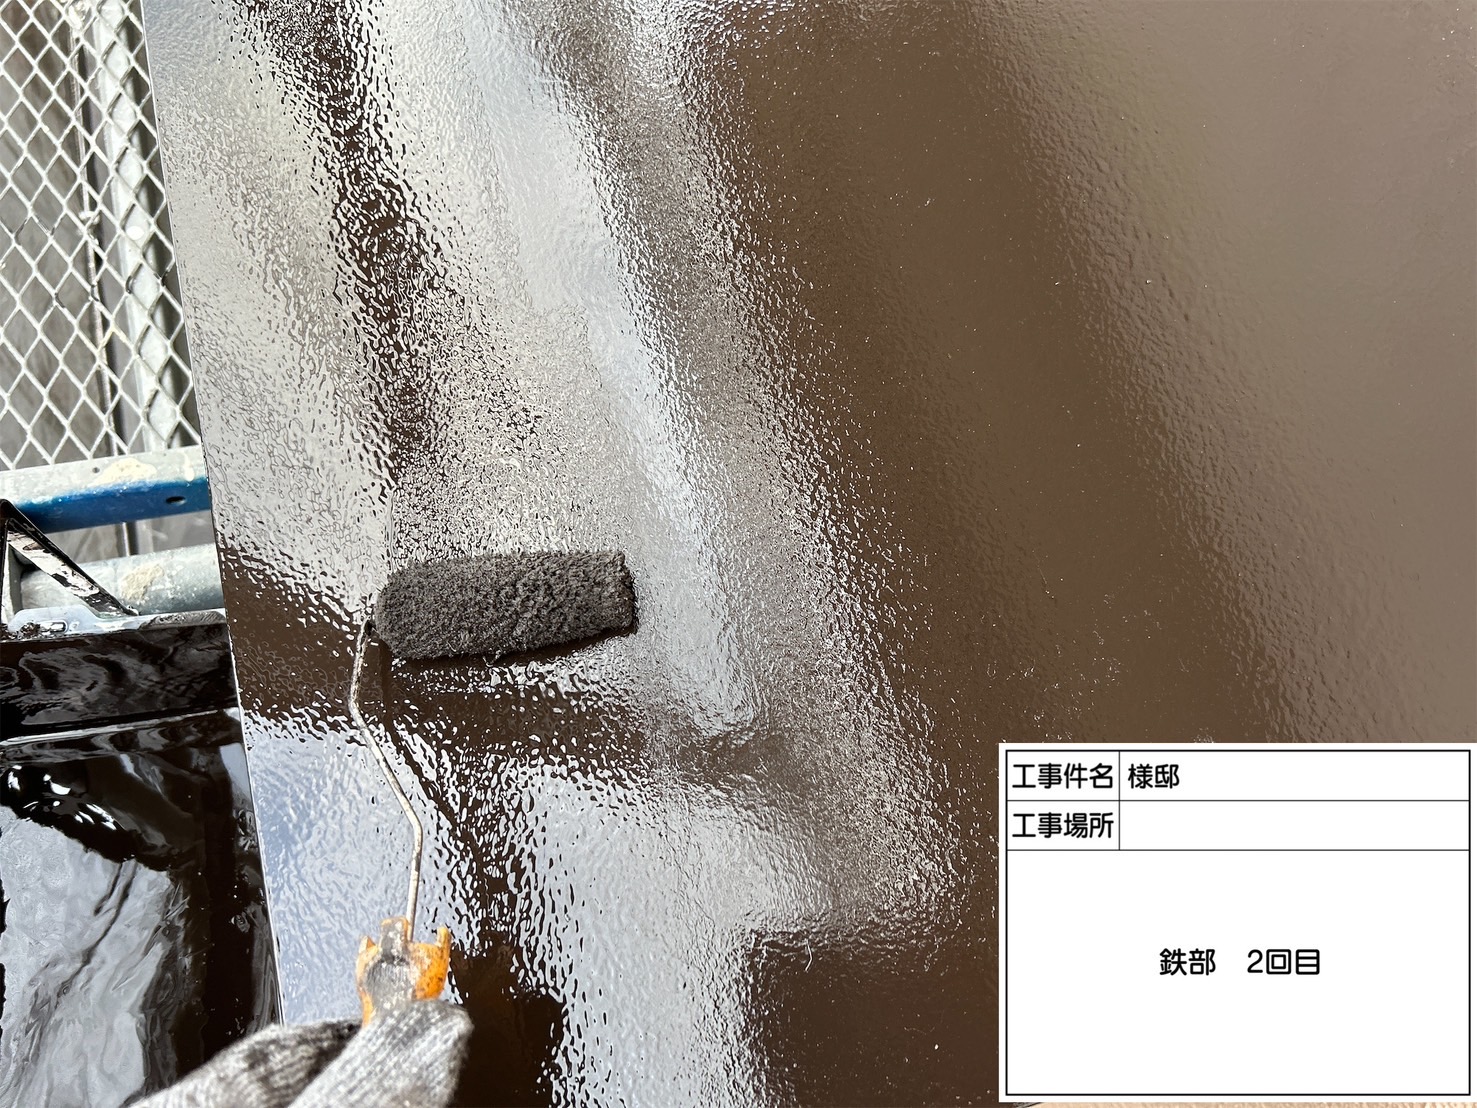 佐賀県三養基郡基山町小倉のS様邸で外壁の汚れやコケを除去し、ひび割れの補修も行った上で外壁塗装工事を行っていきます。3/26着工です。【ご来店より】